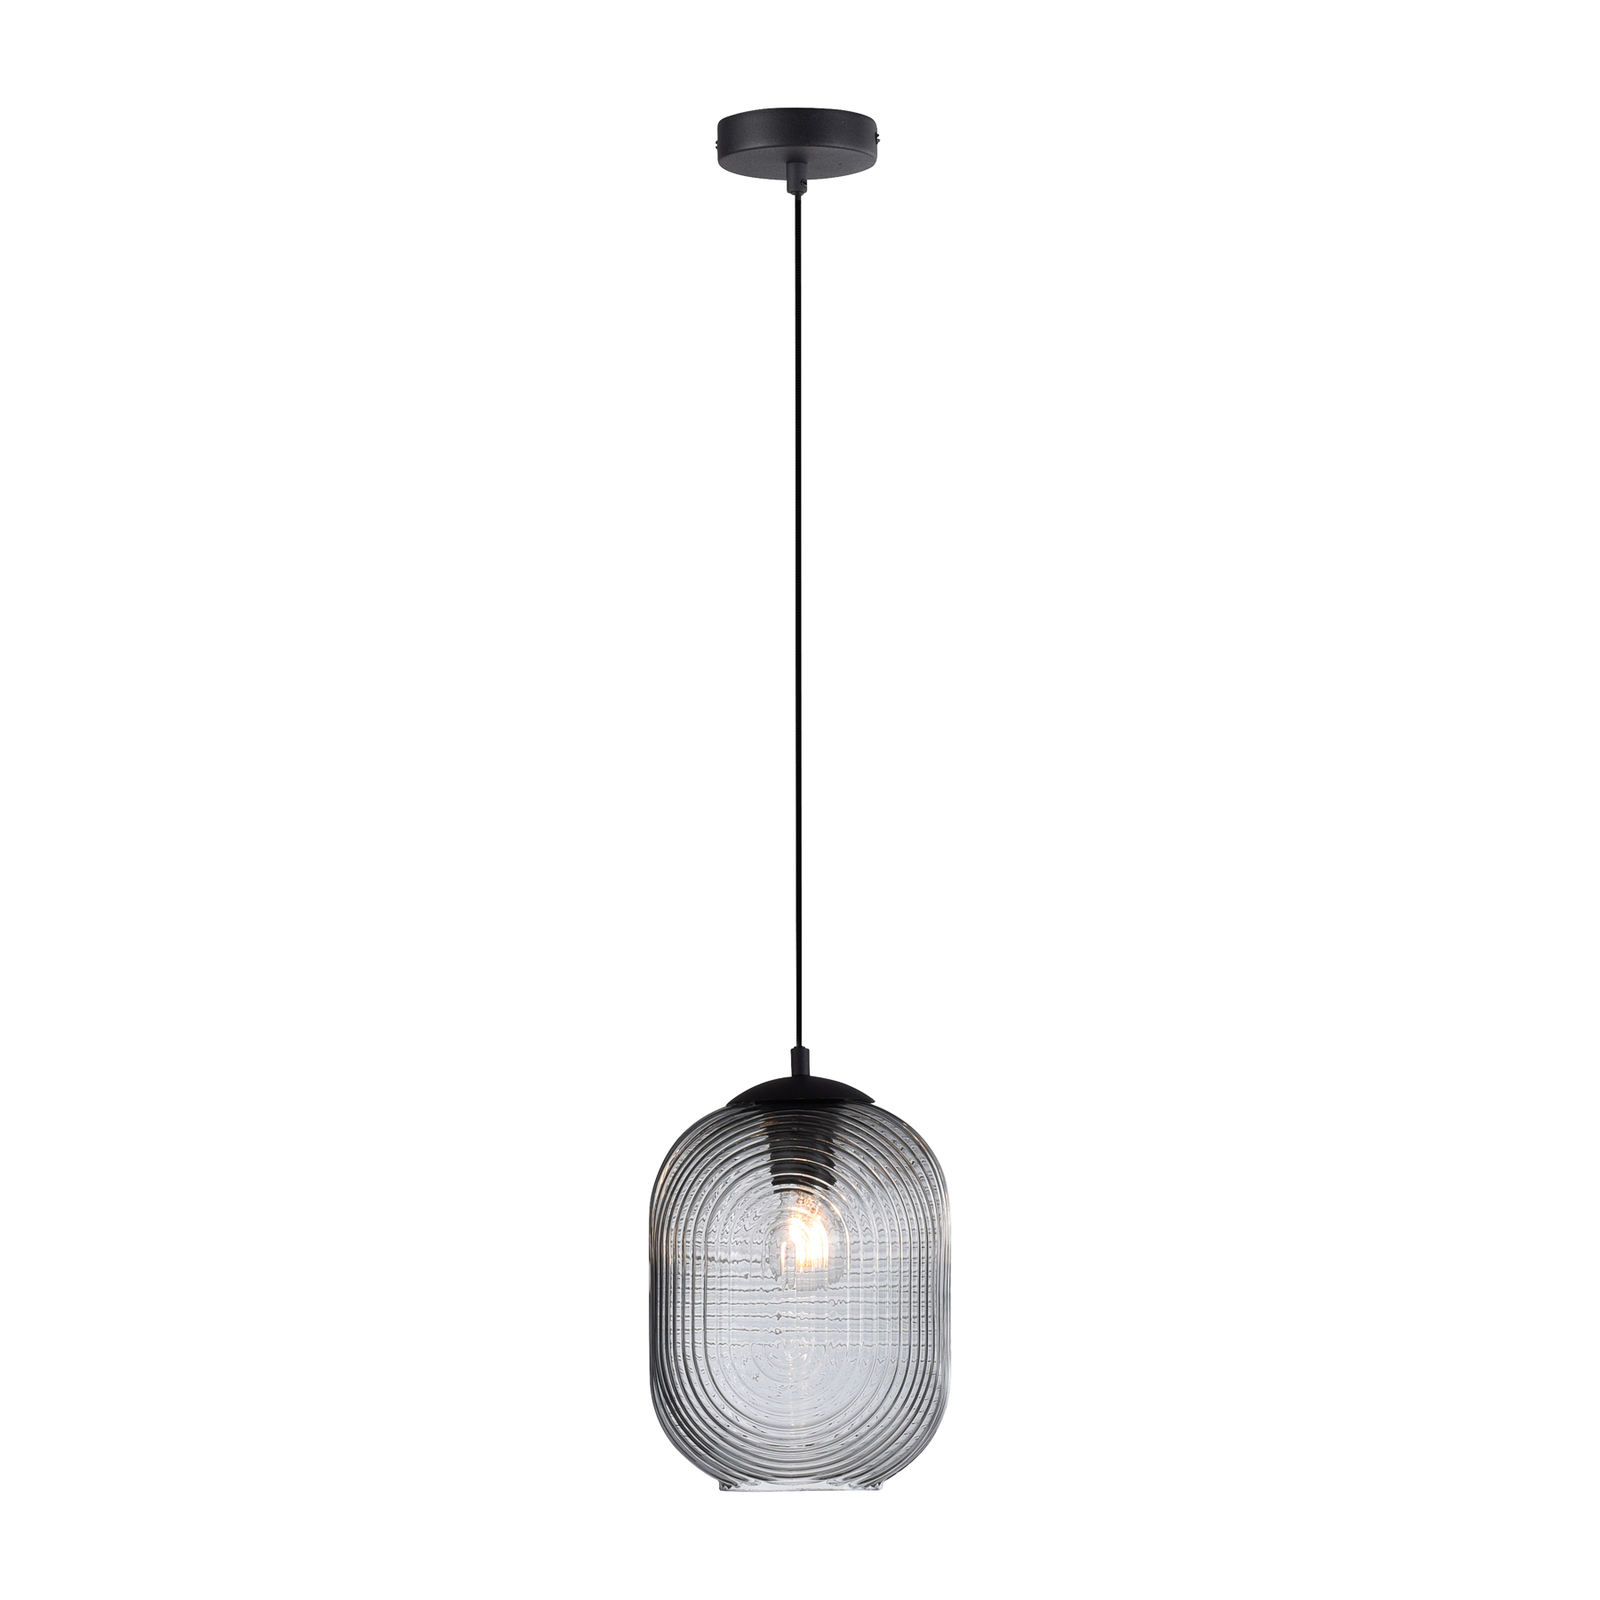 Shitake pendant light, one-bulb, smoky grey